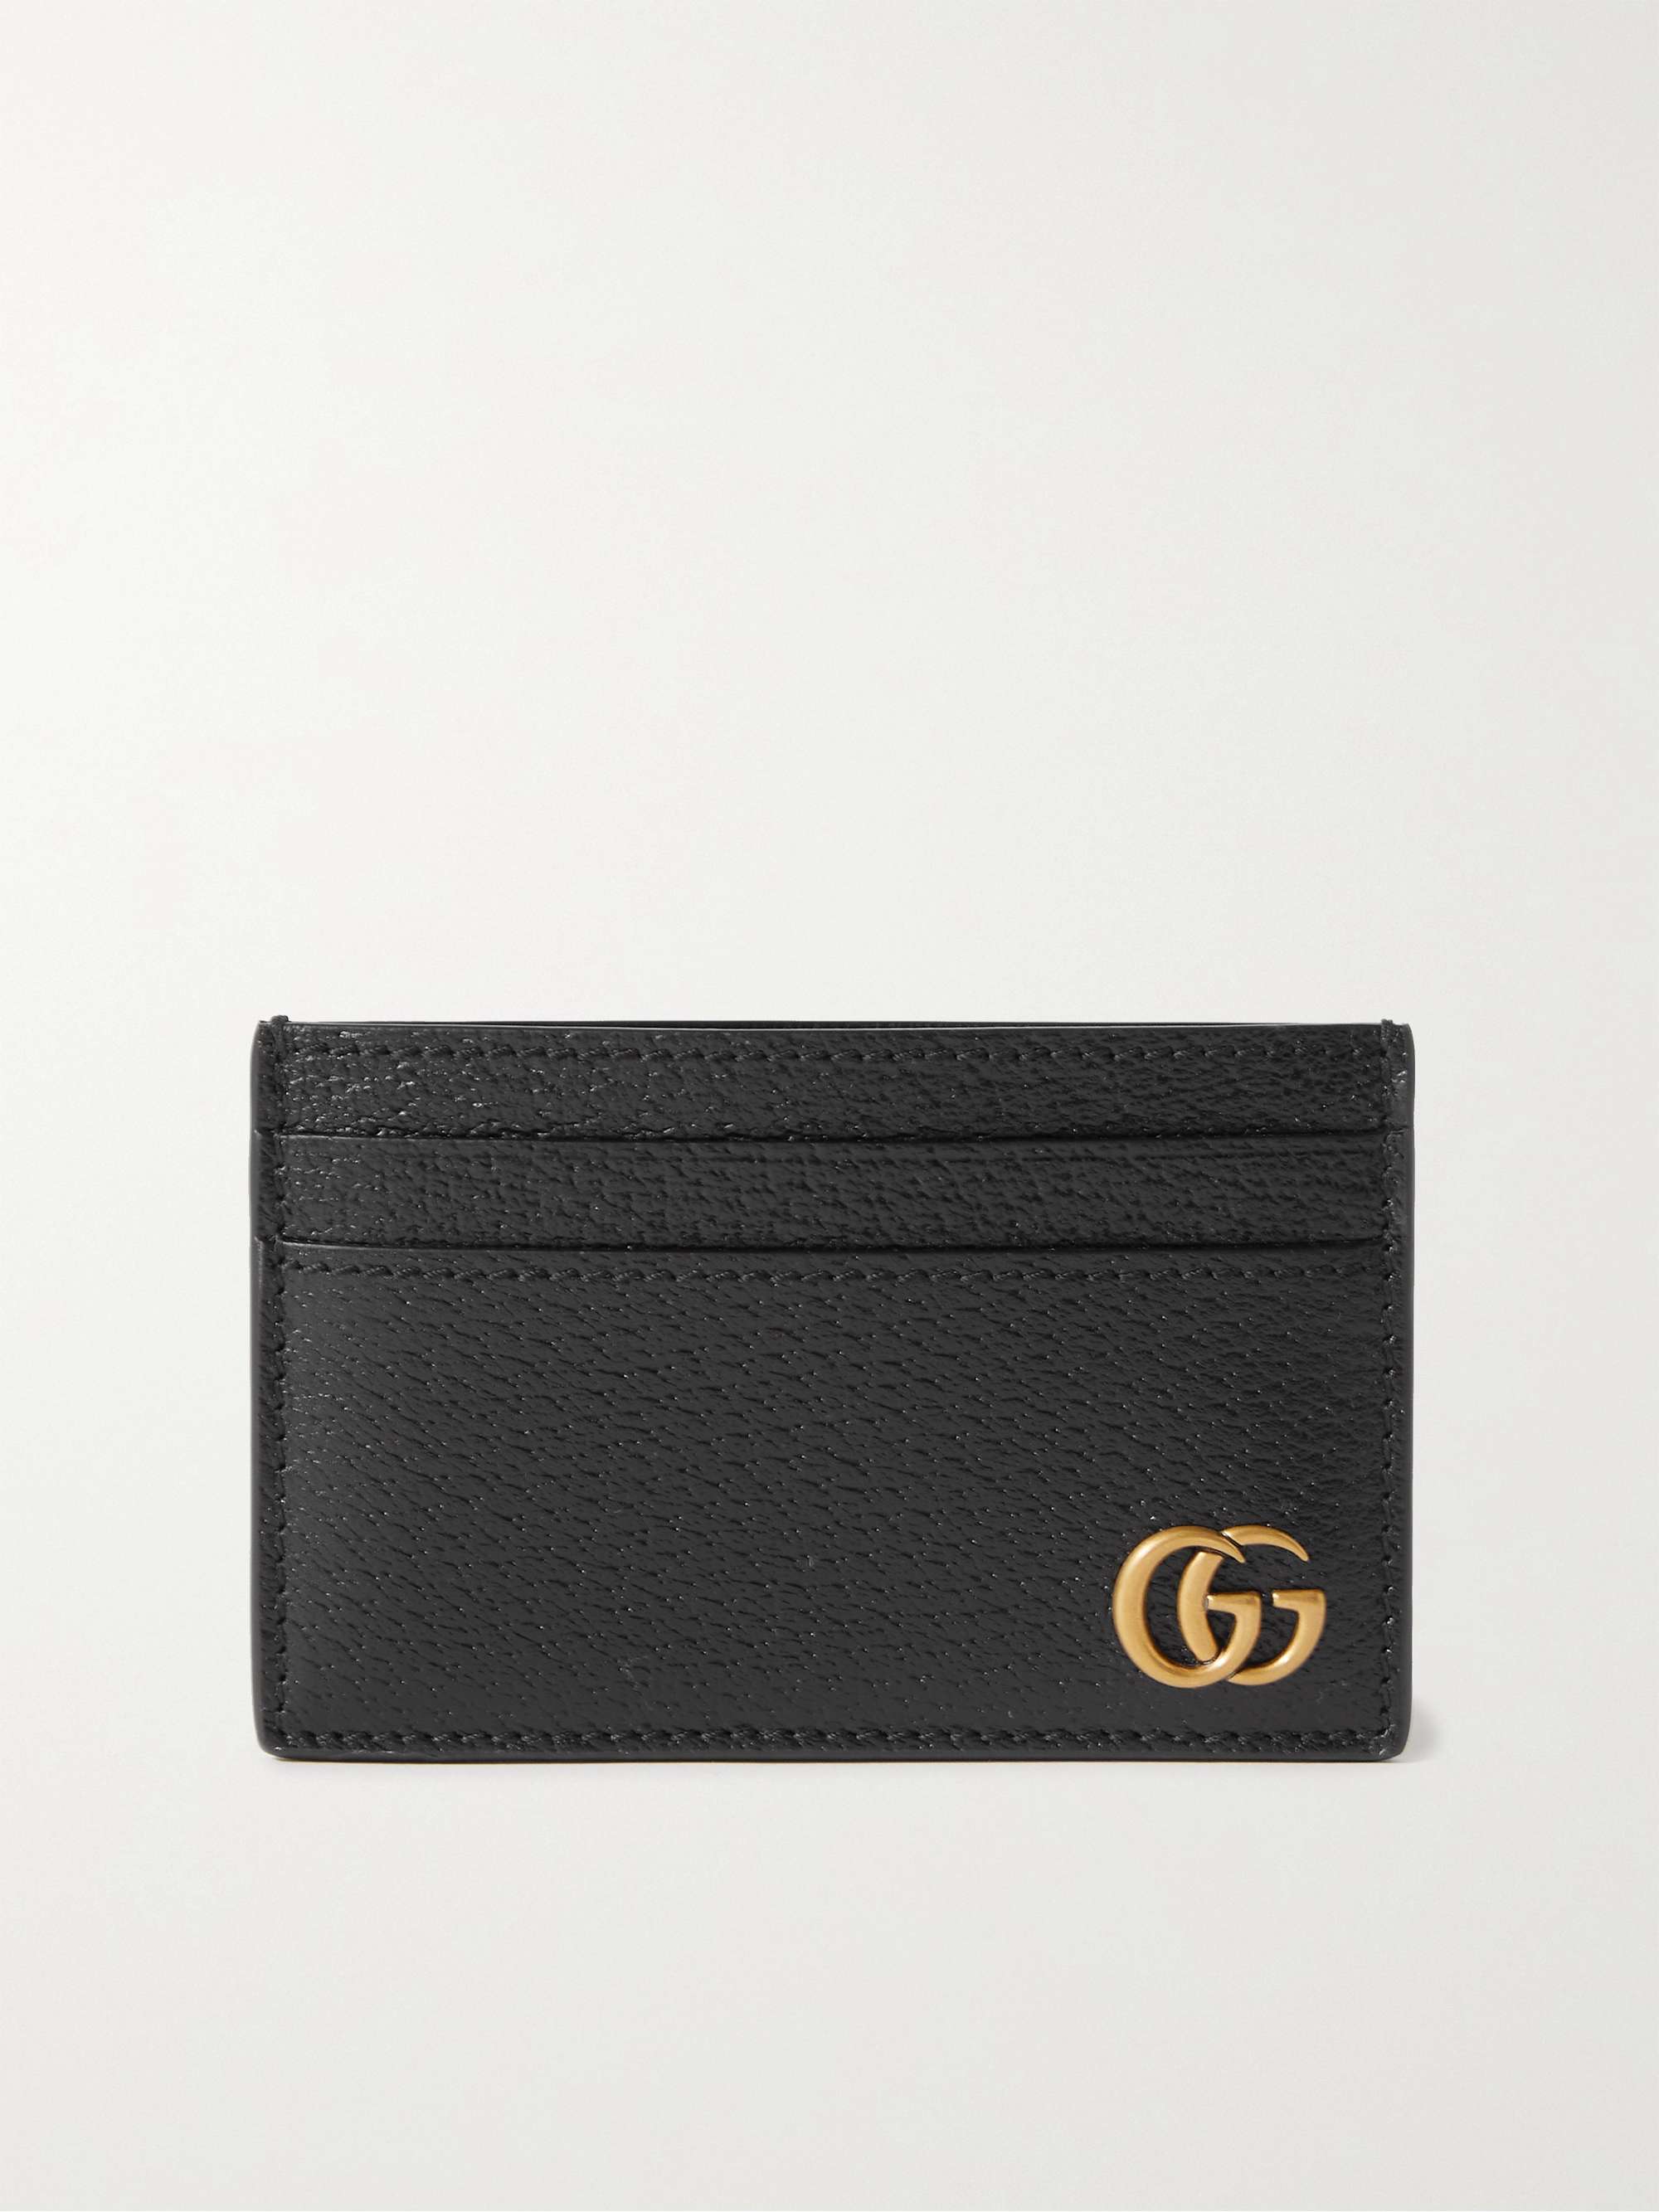 GG Marmont Full-Grain Leather Cardholder